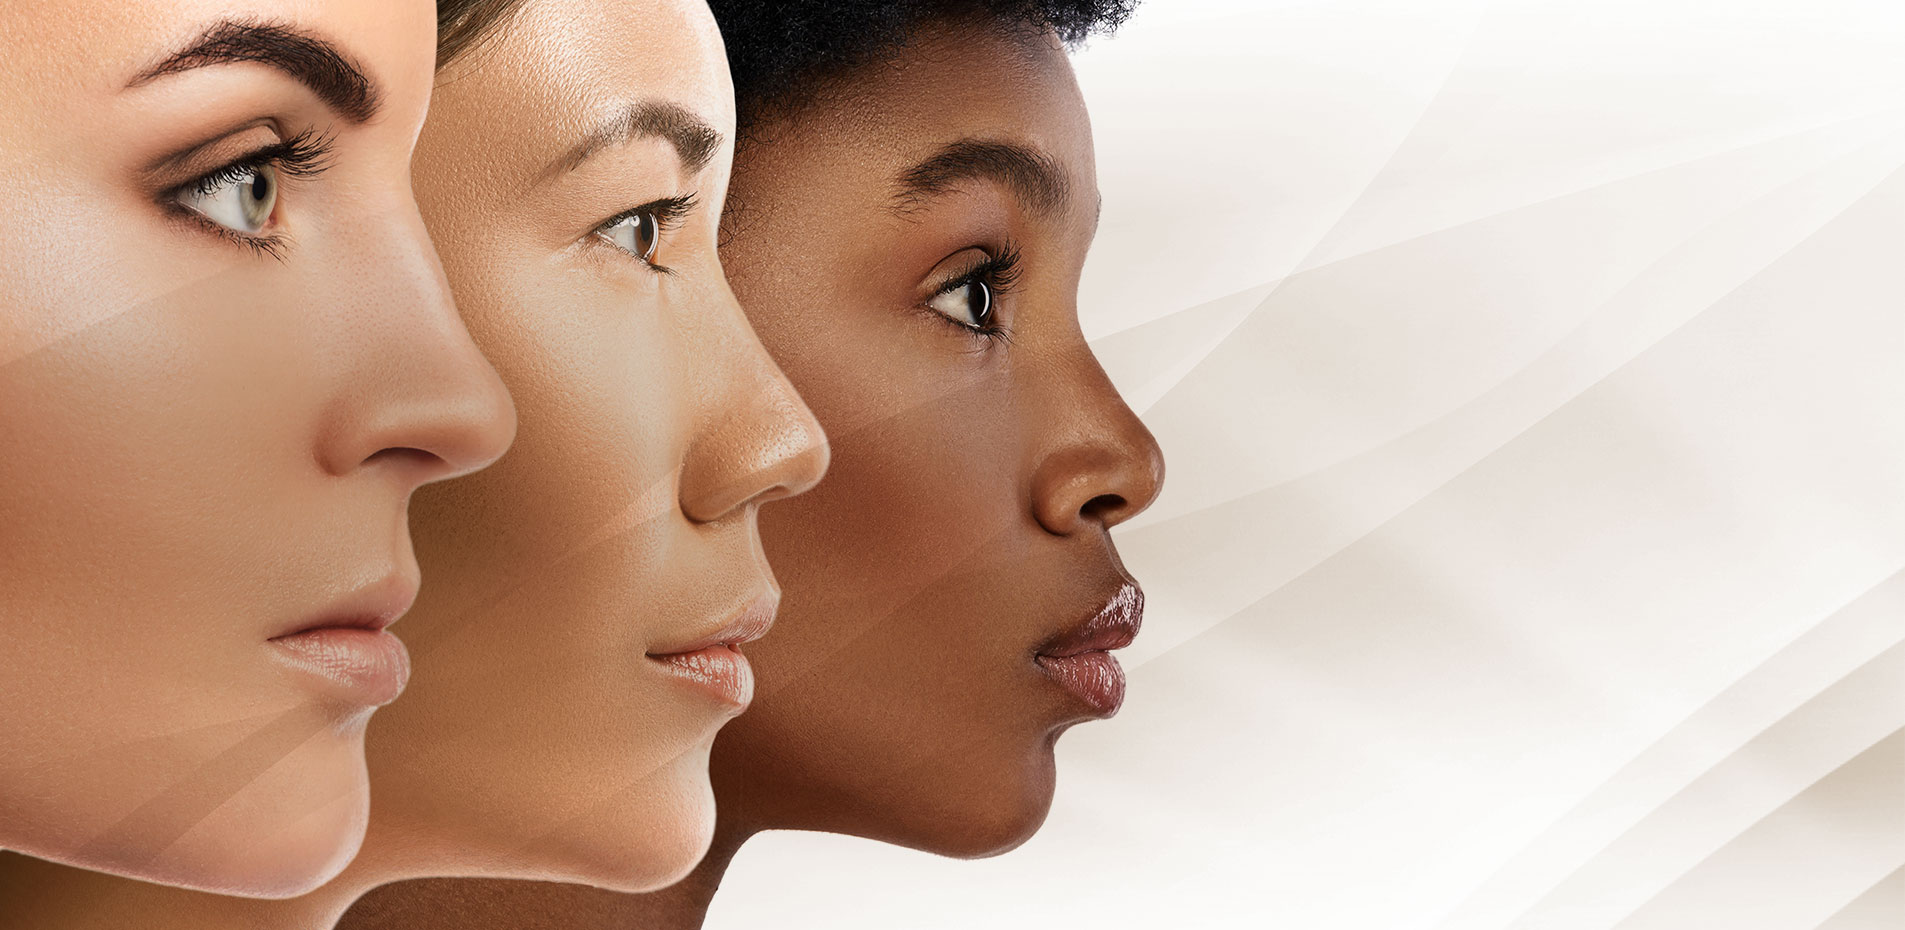 Perfil do rosto de três mulheres: uma branca, outra oriental e a terceira negra